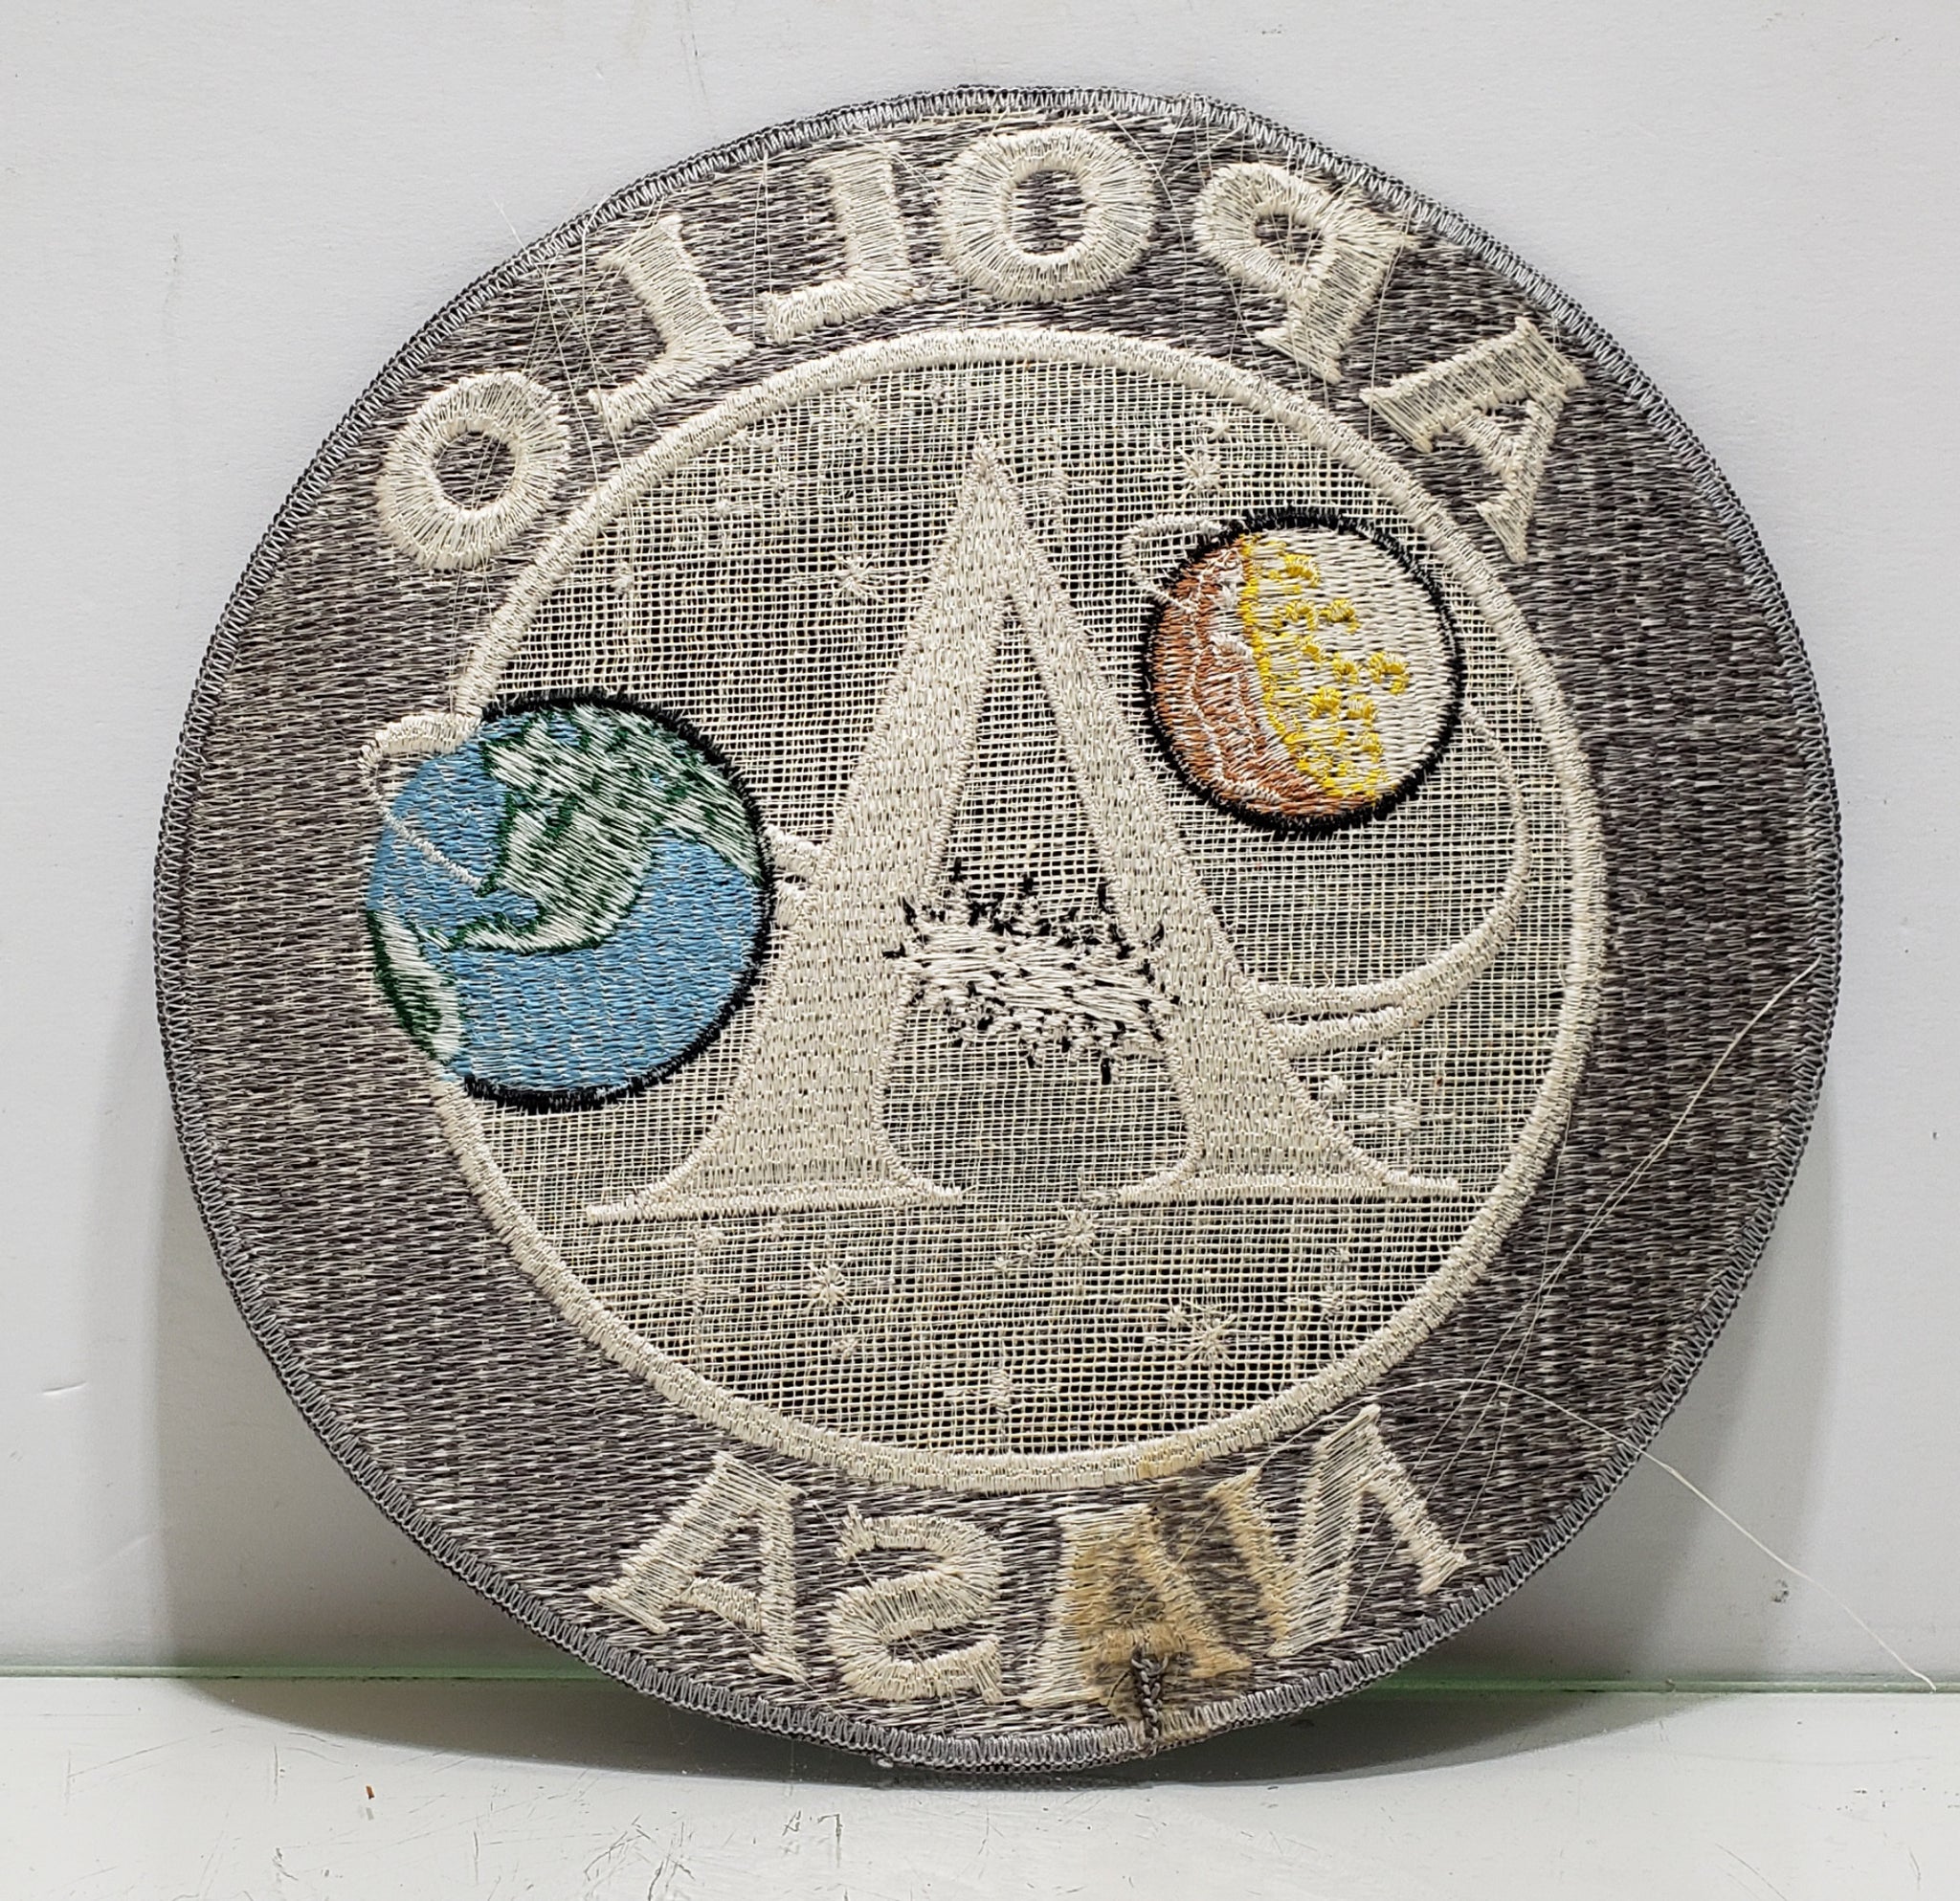 Apollo Nasa Program Nasa embroidered patch, velcro